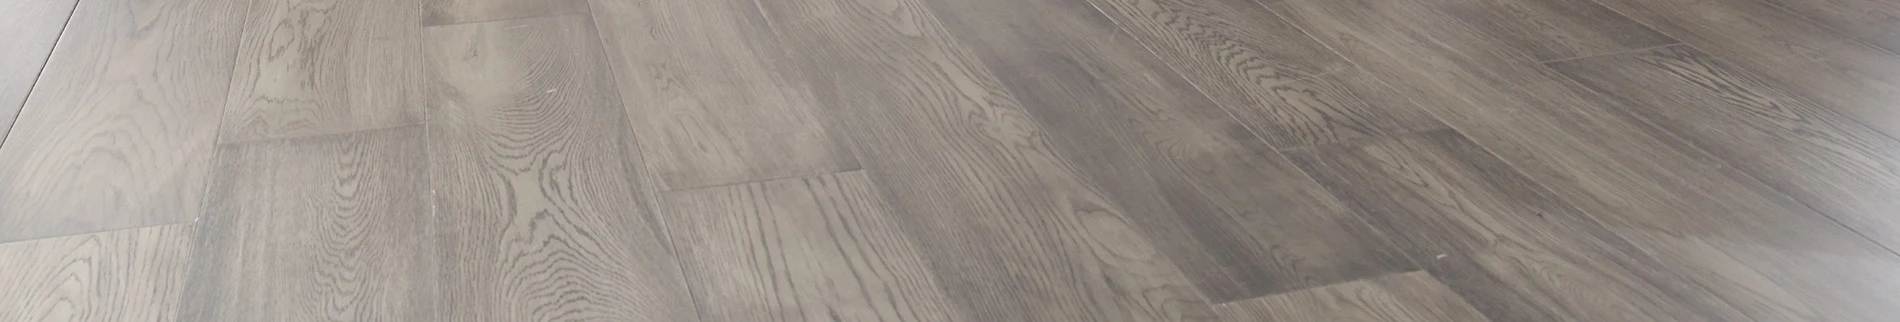 close up of medium toned flooring